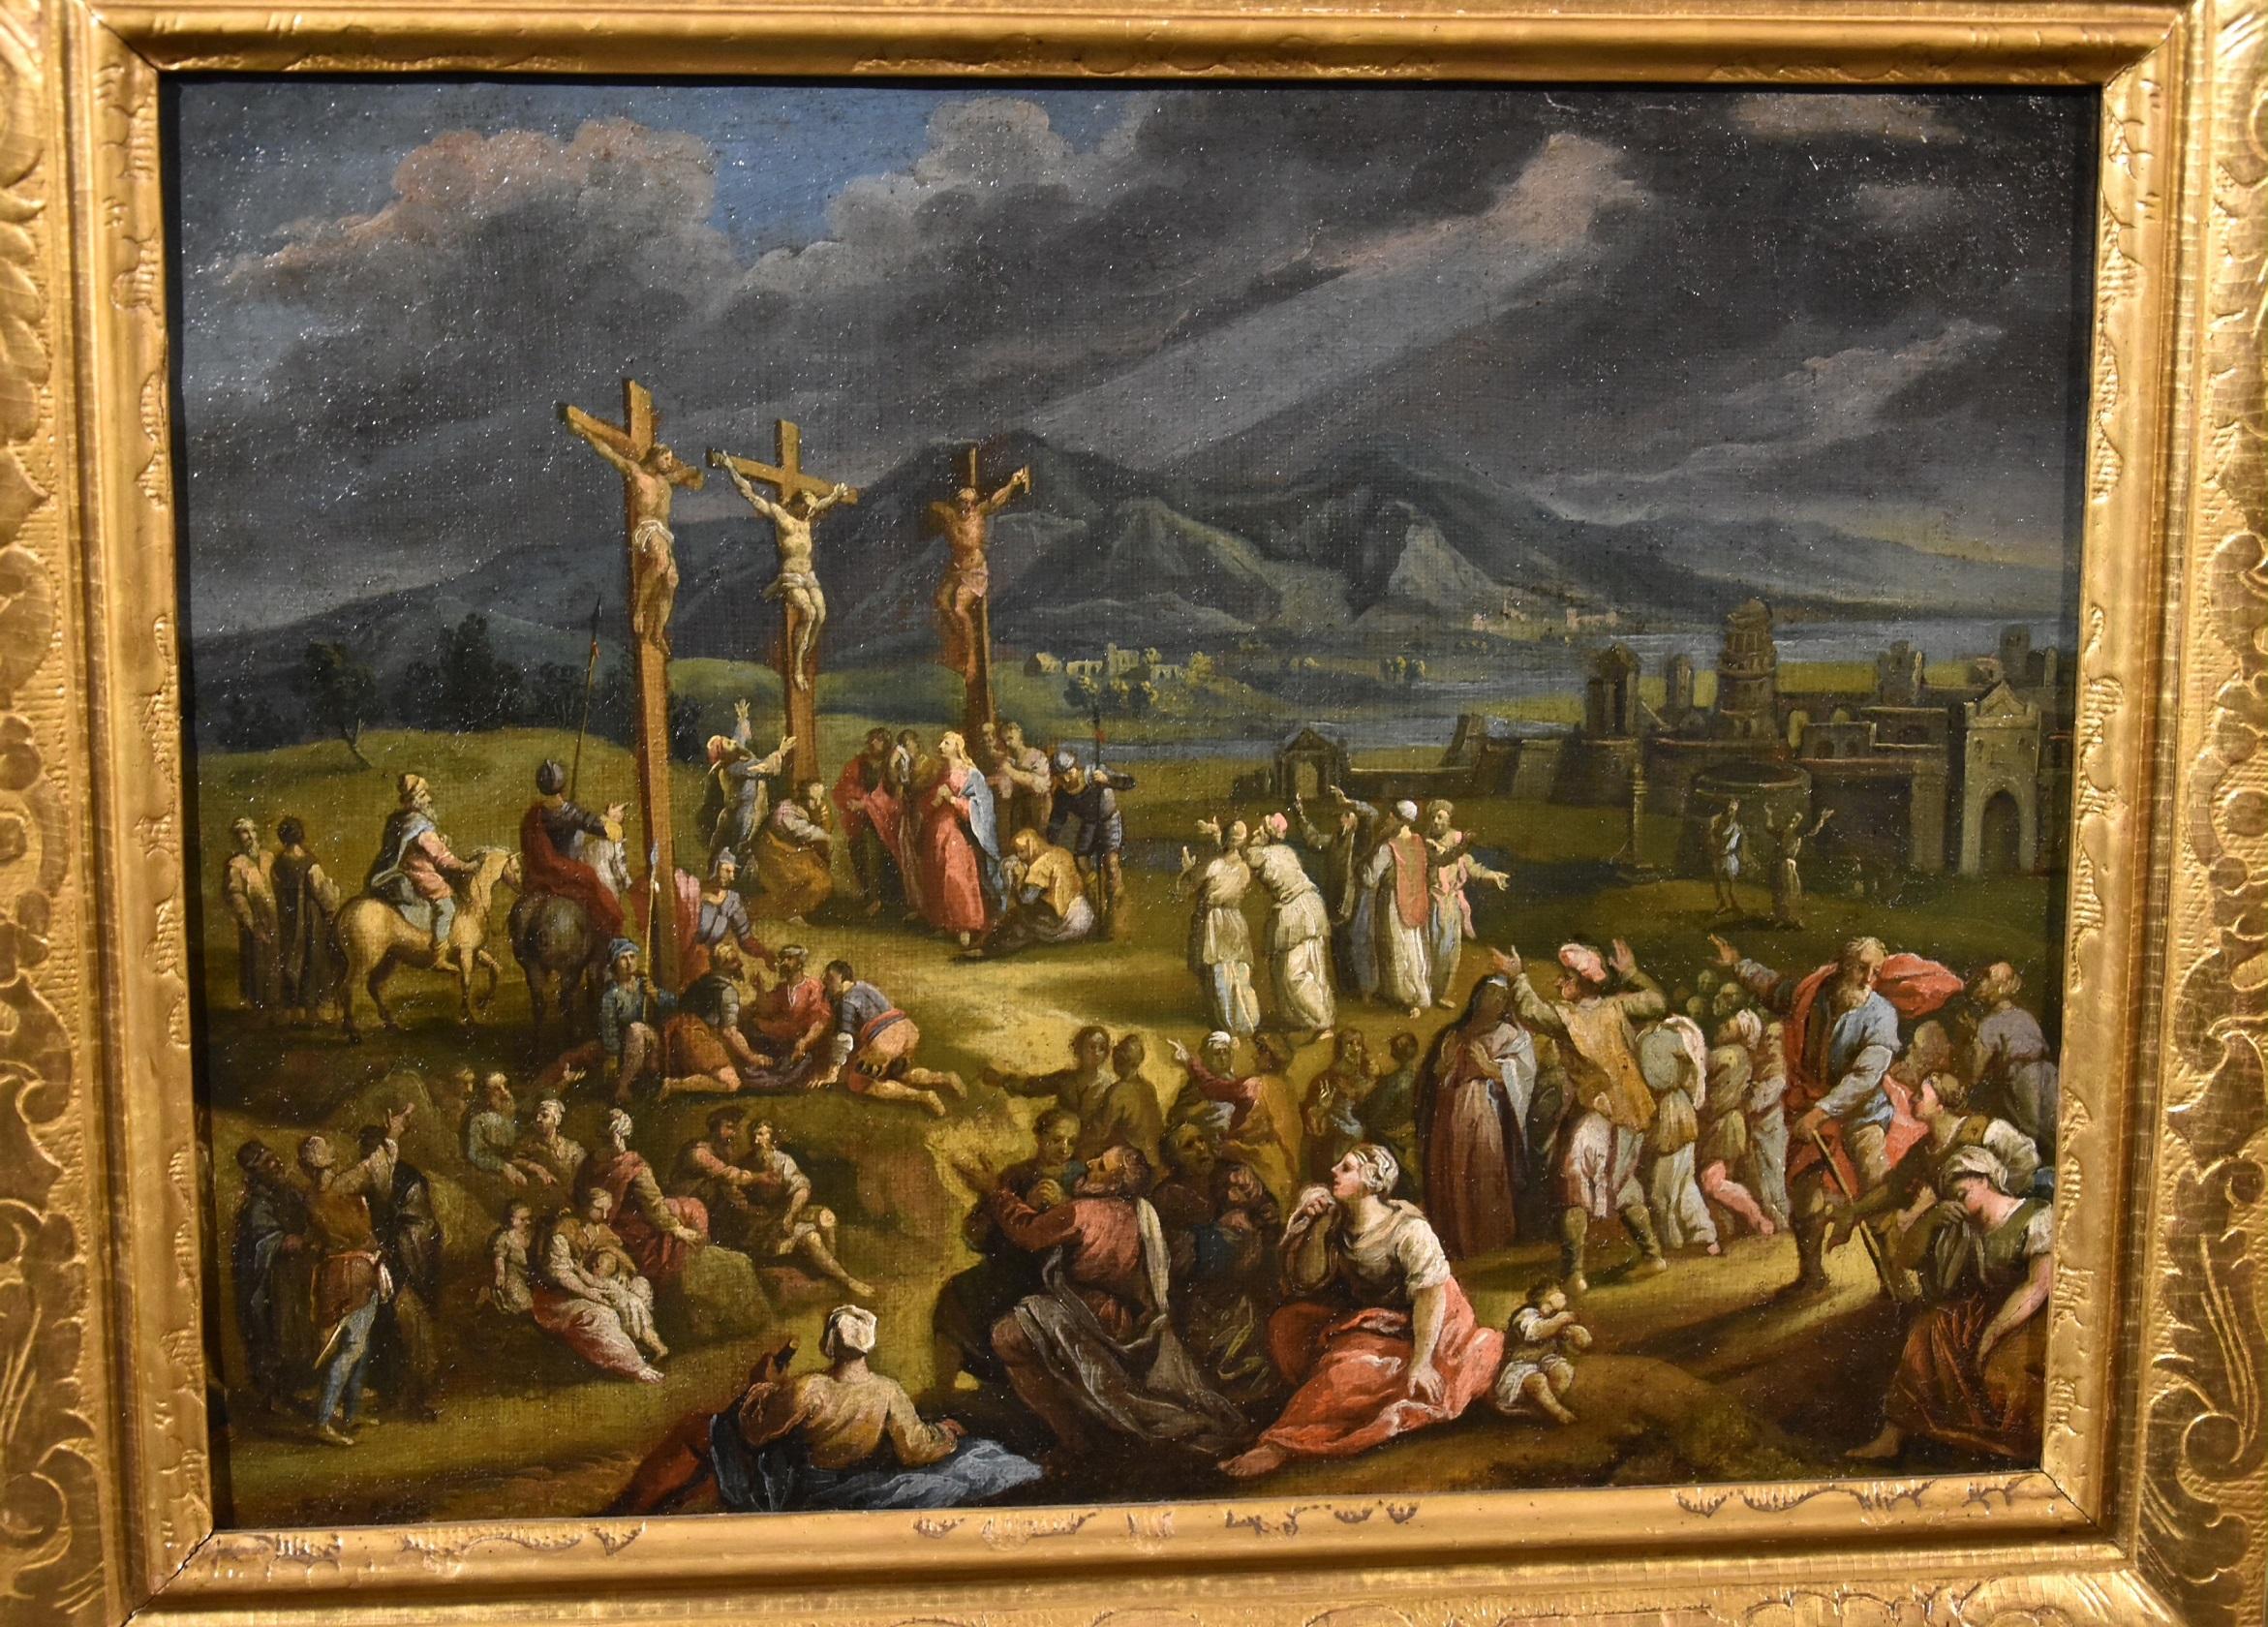 Landschaft, Kreuzigung Christi, Öl auf Leinwand, alter Meister, 17. Jahrhundert  (Alte Meister), Painting, von Scipione Compagni, or Compagno (Naples, about 1624 - after 1680)